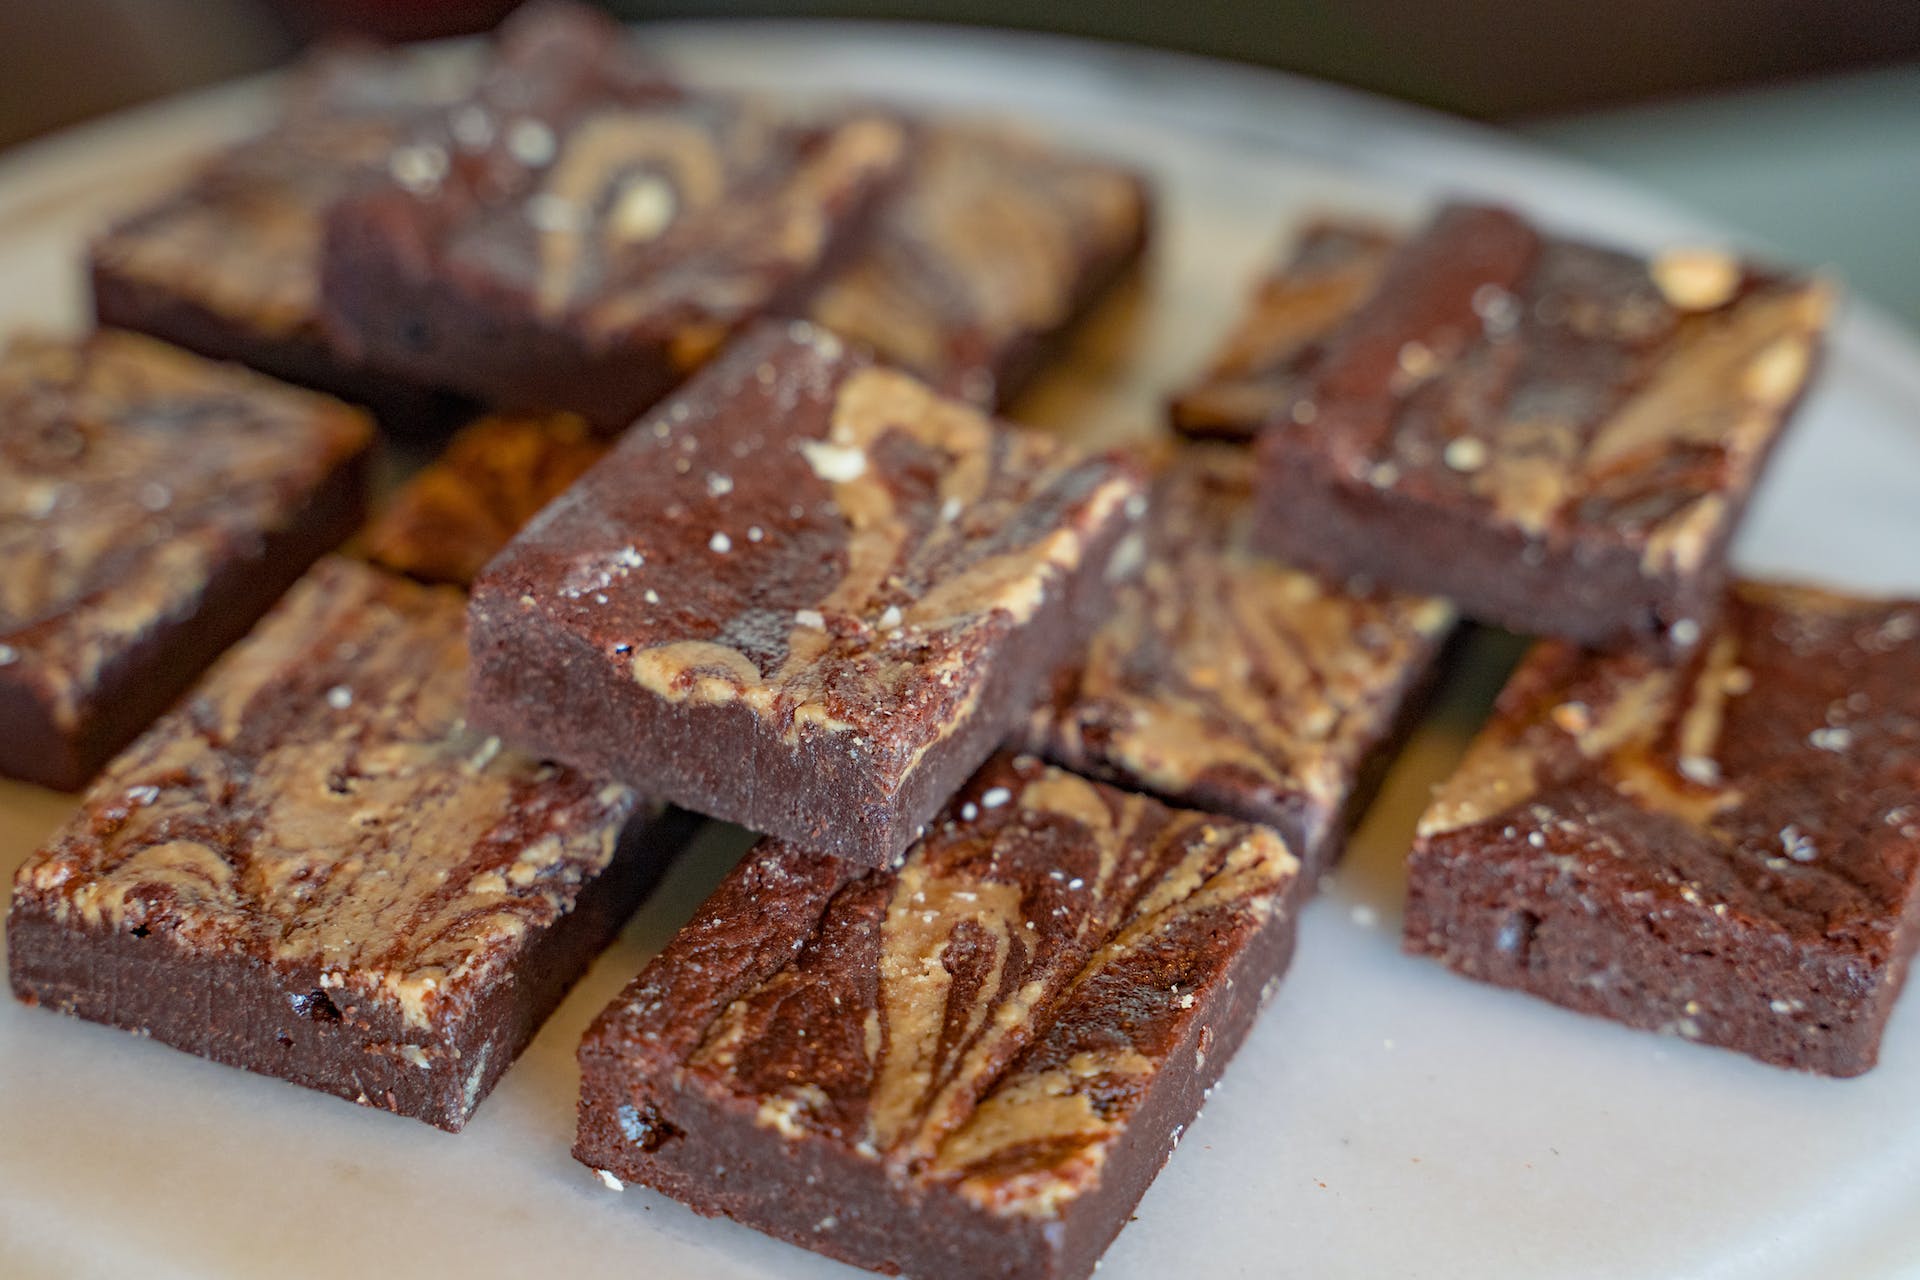 Assiette de brownies | Source : Pexels